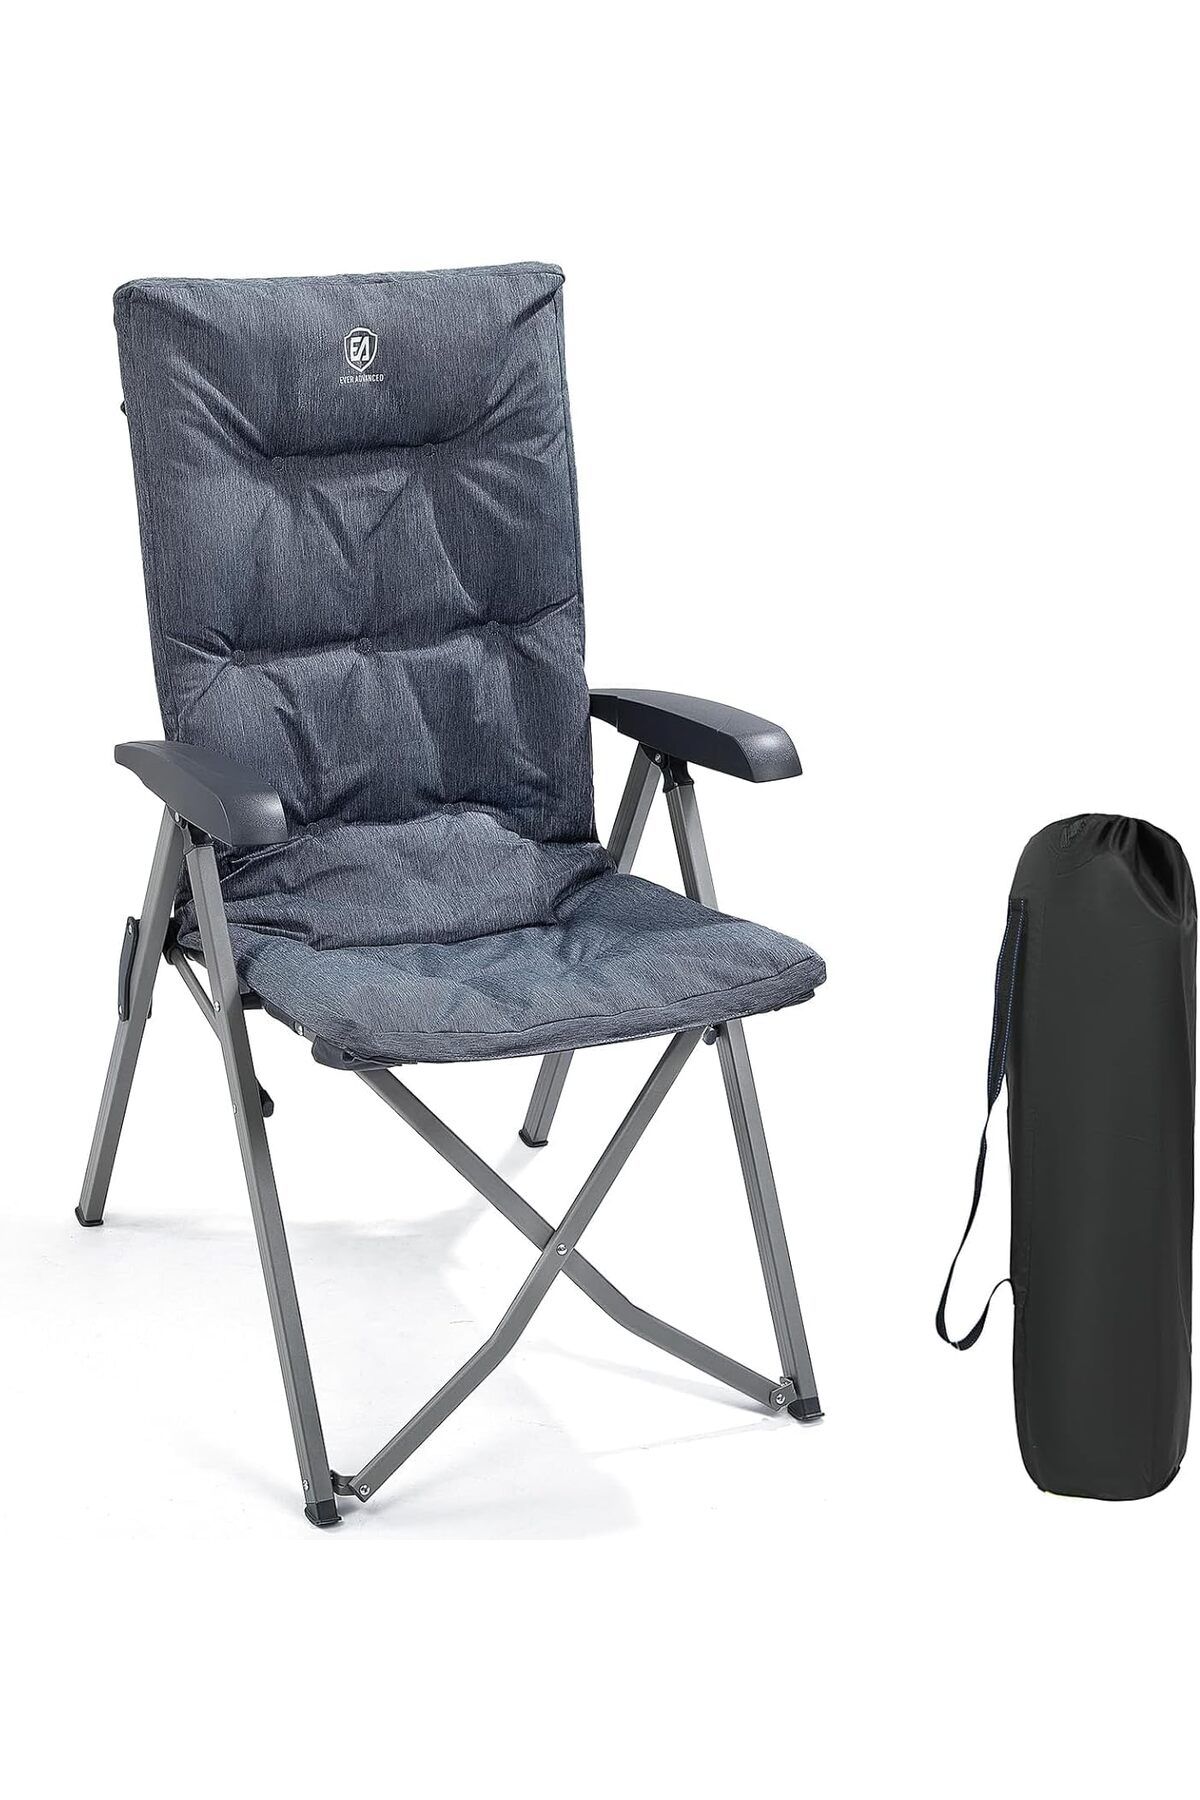 EVER ADVANCED Katlanabilir Kamp Sandalyesi, Yüksek Sırtlık, 150kg Kapasite, Lüks 6 cm Kalın Yastıklı